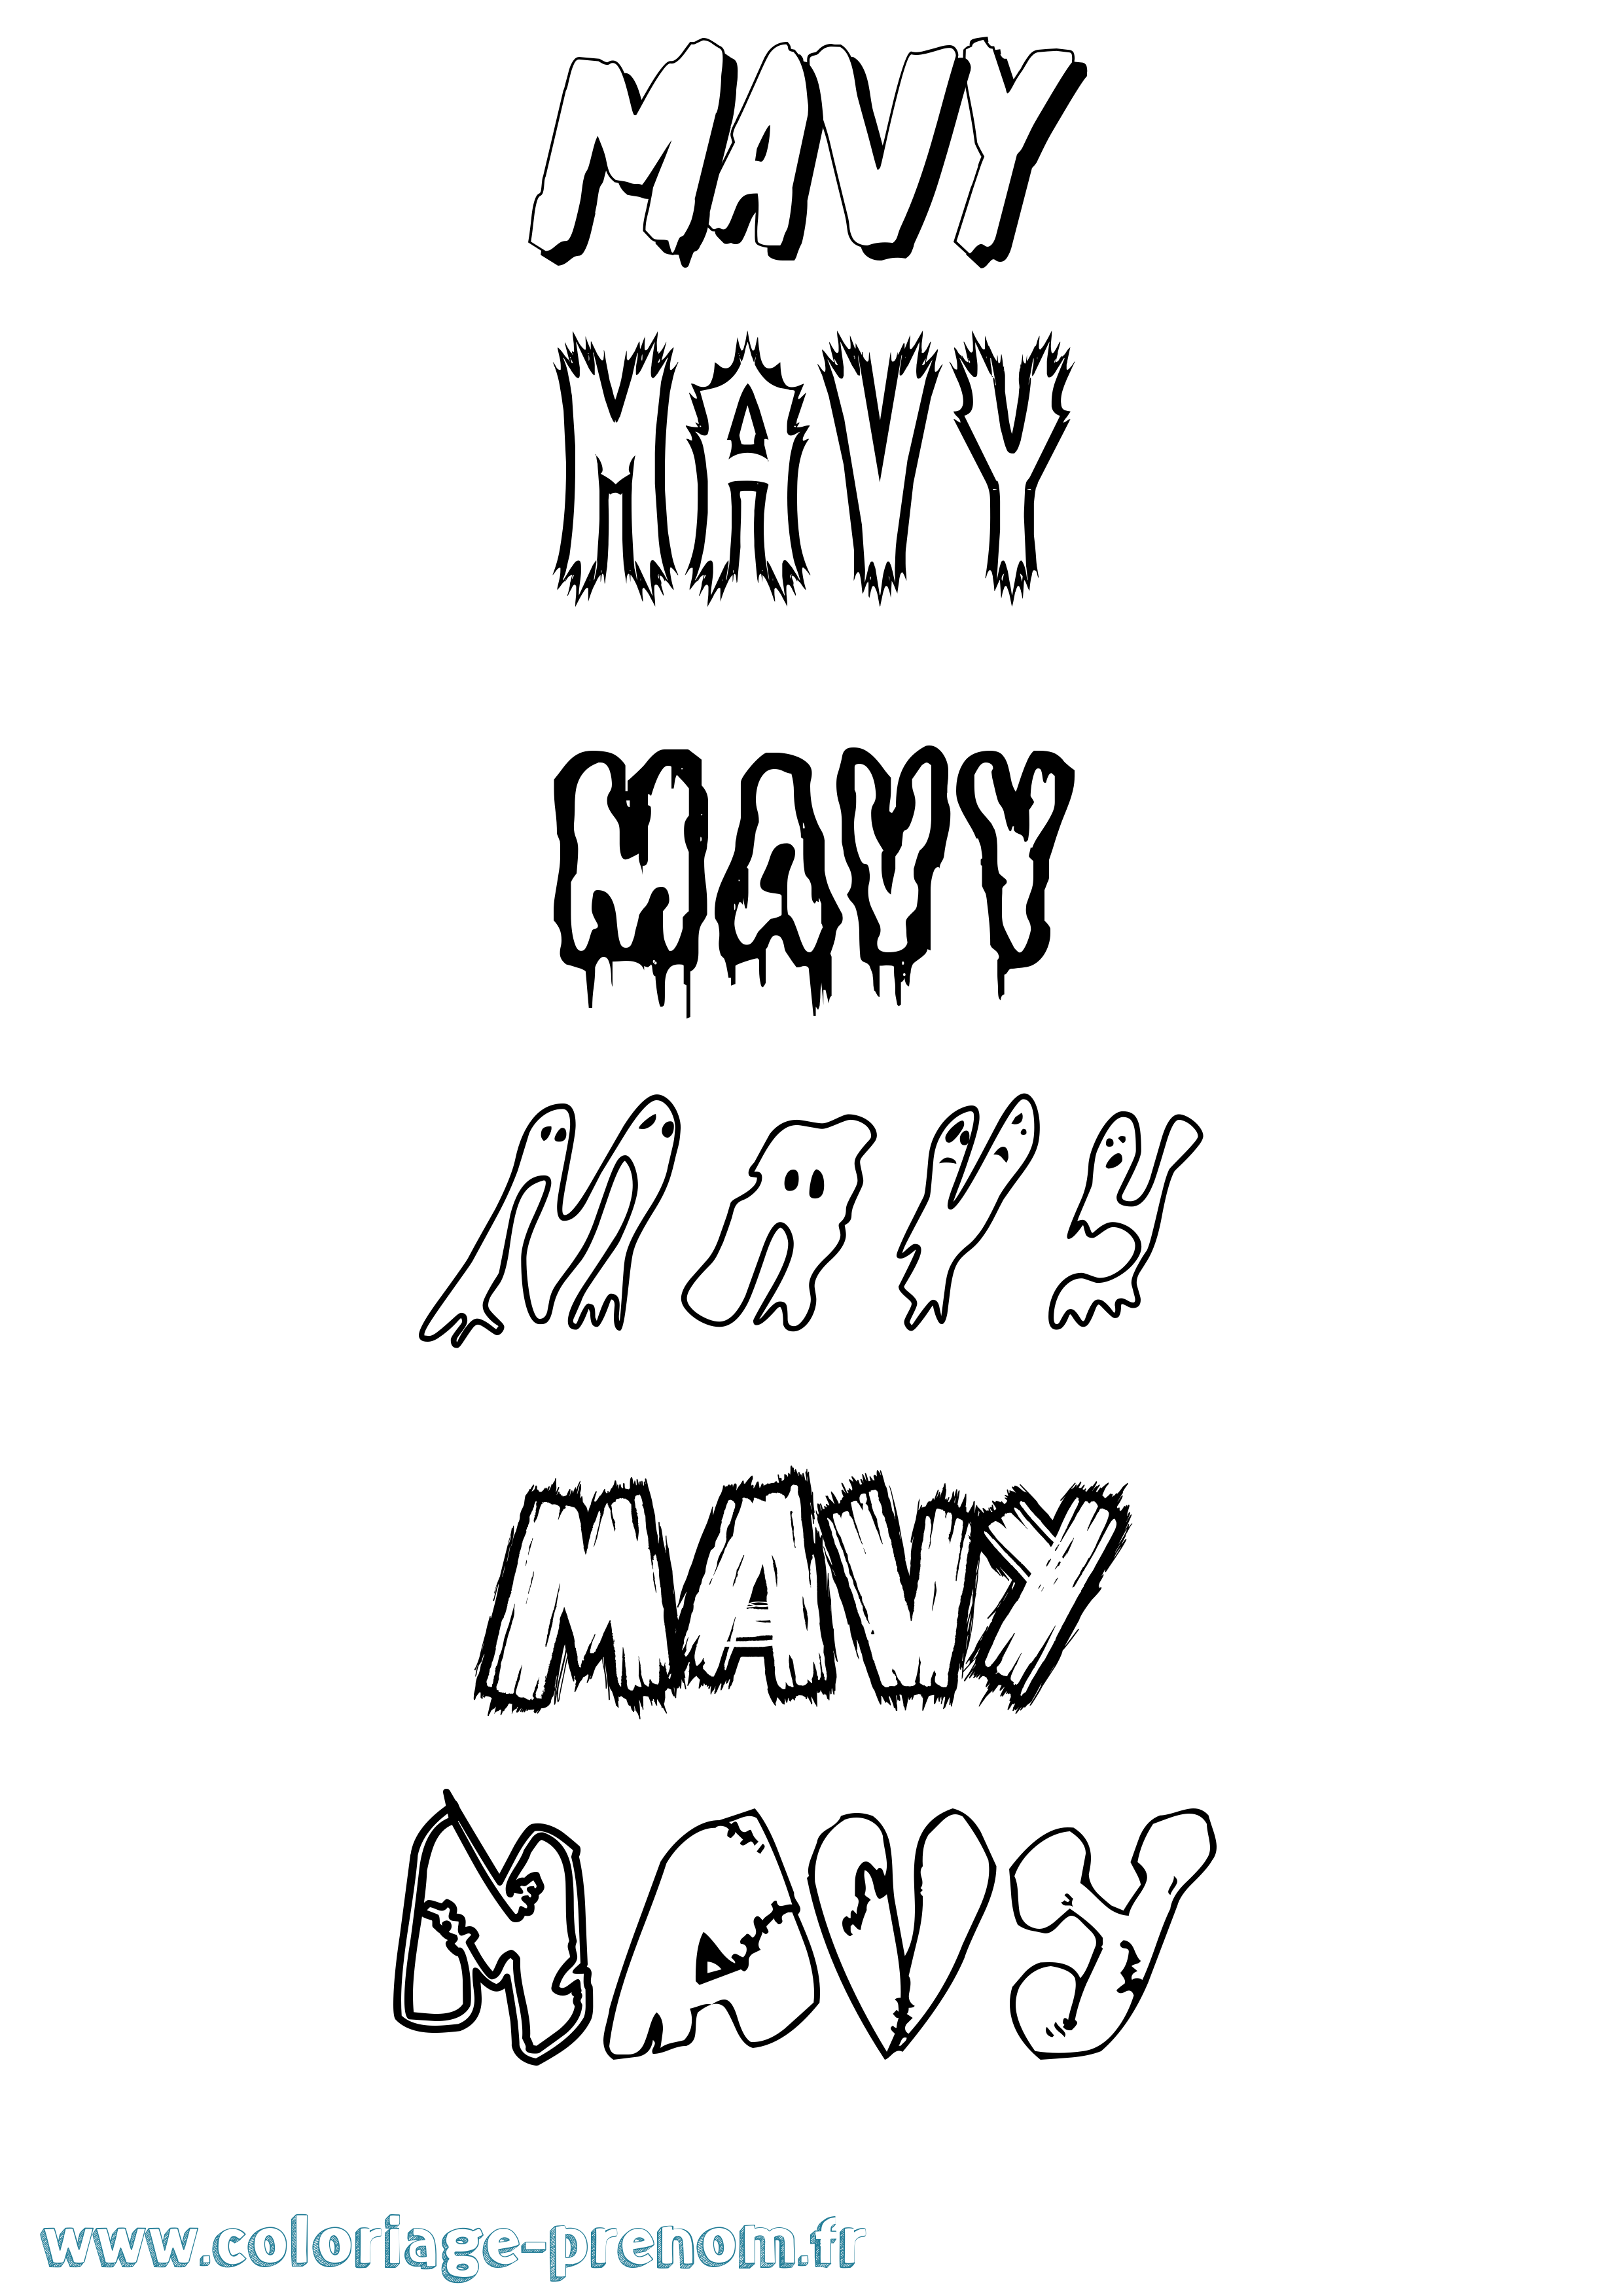 Coloriage prénom Mavy Frisson